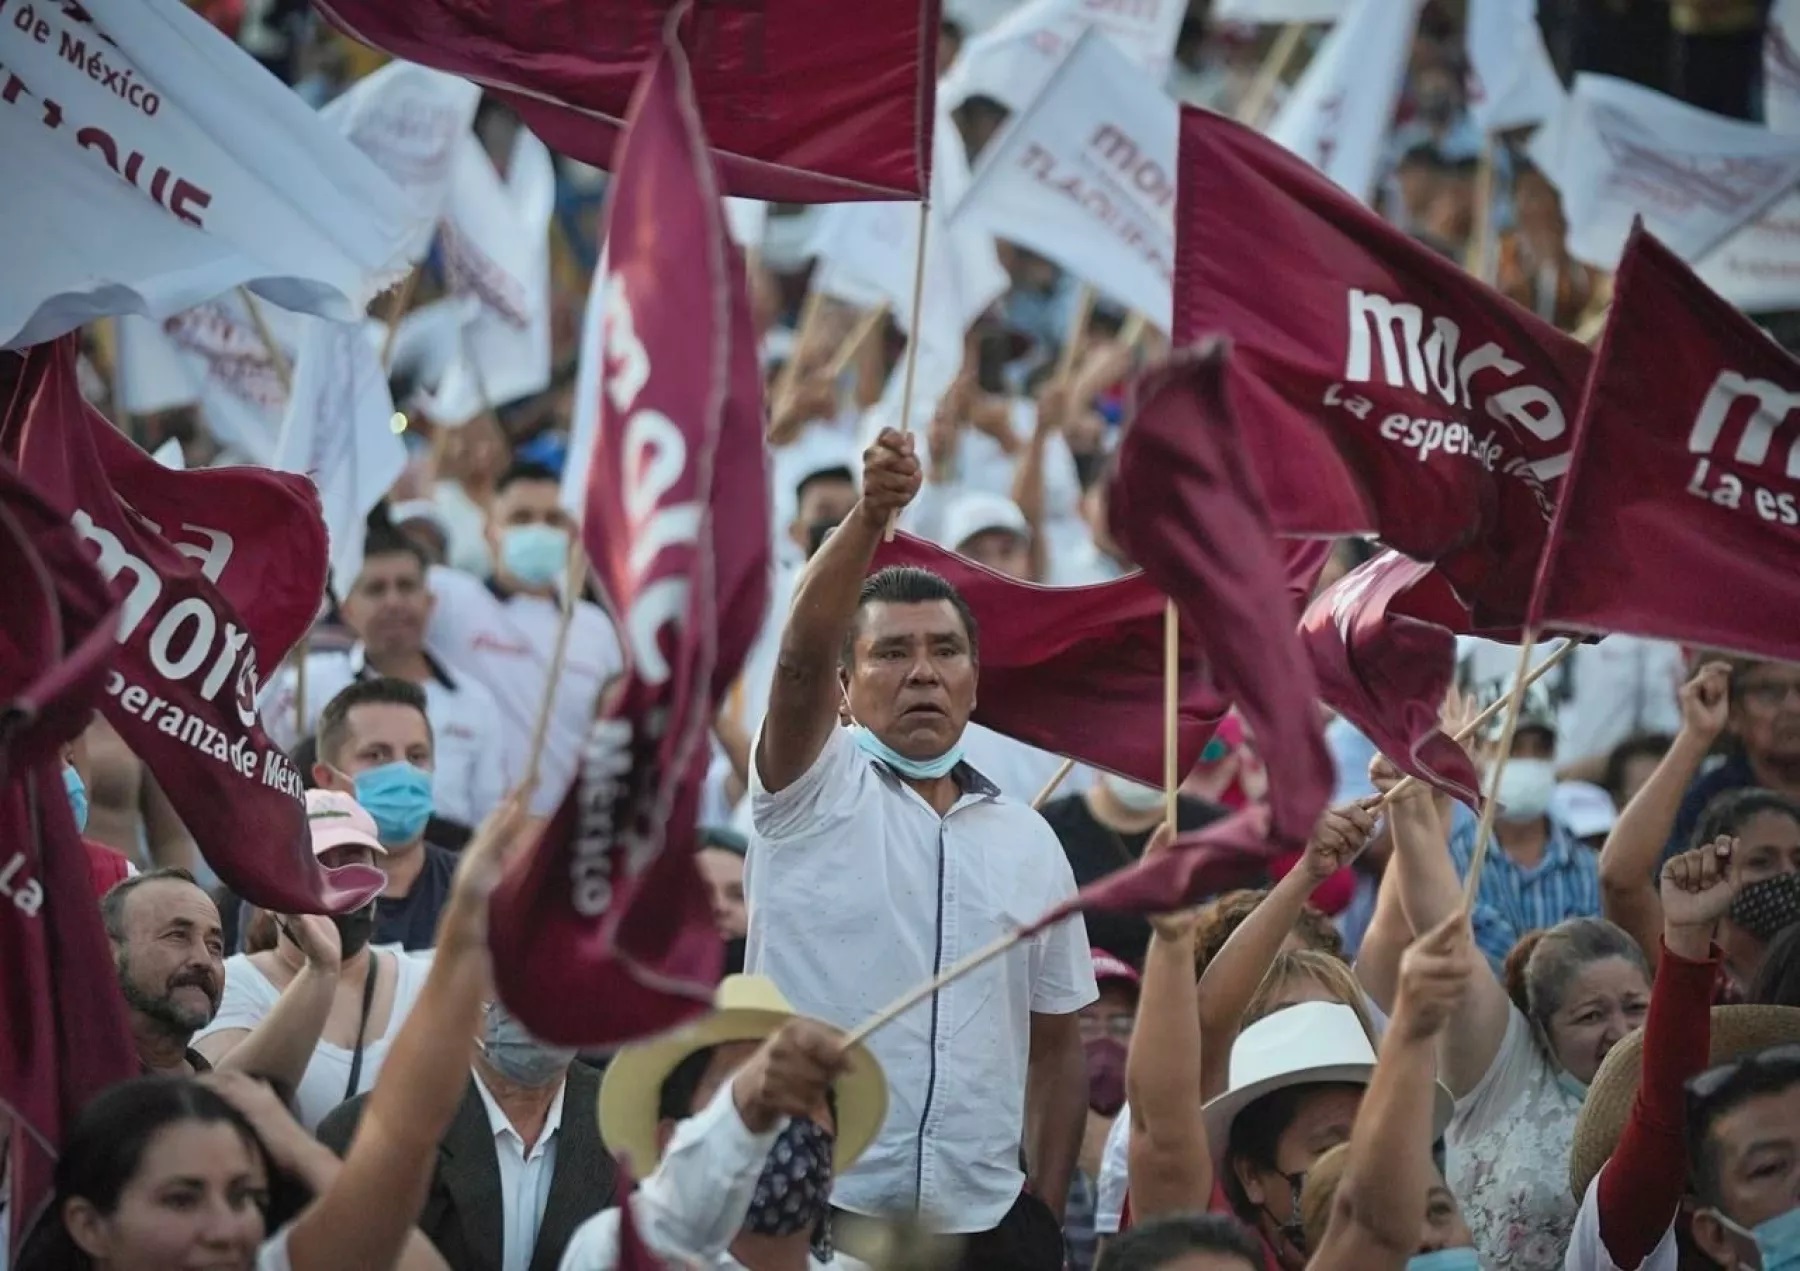 Los aspirantes a la candidatura presidencial de Morena firmaron su registro oficial este viernes 16 de junio